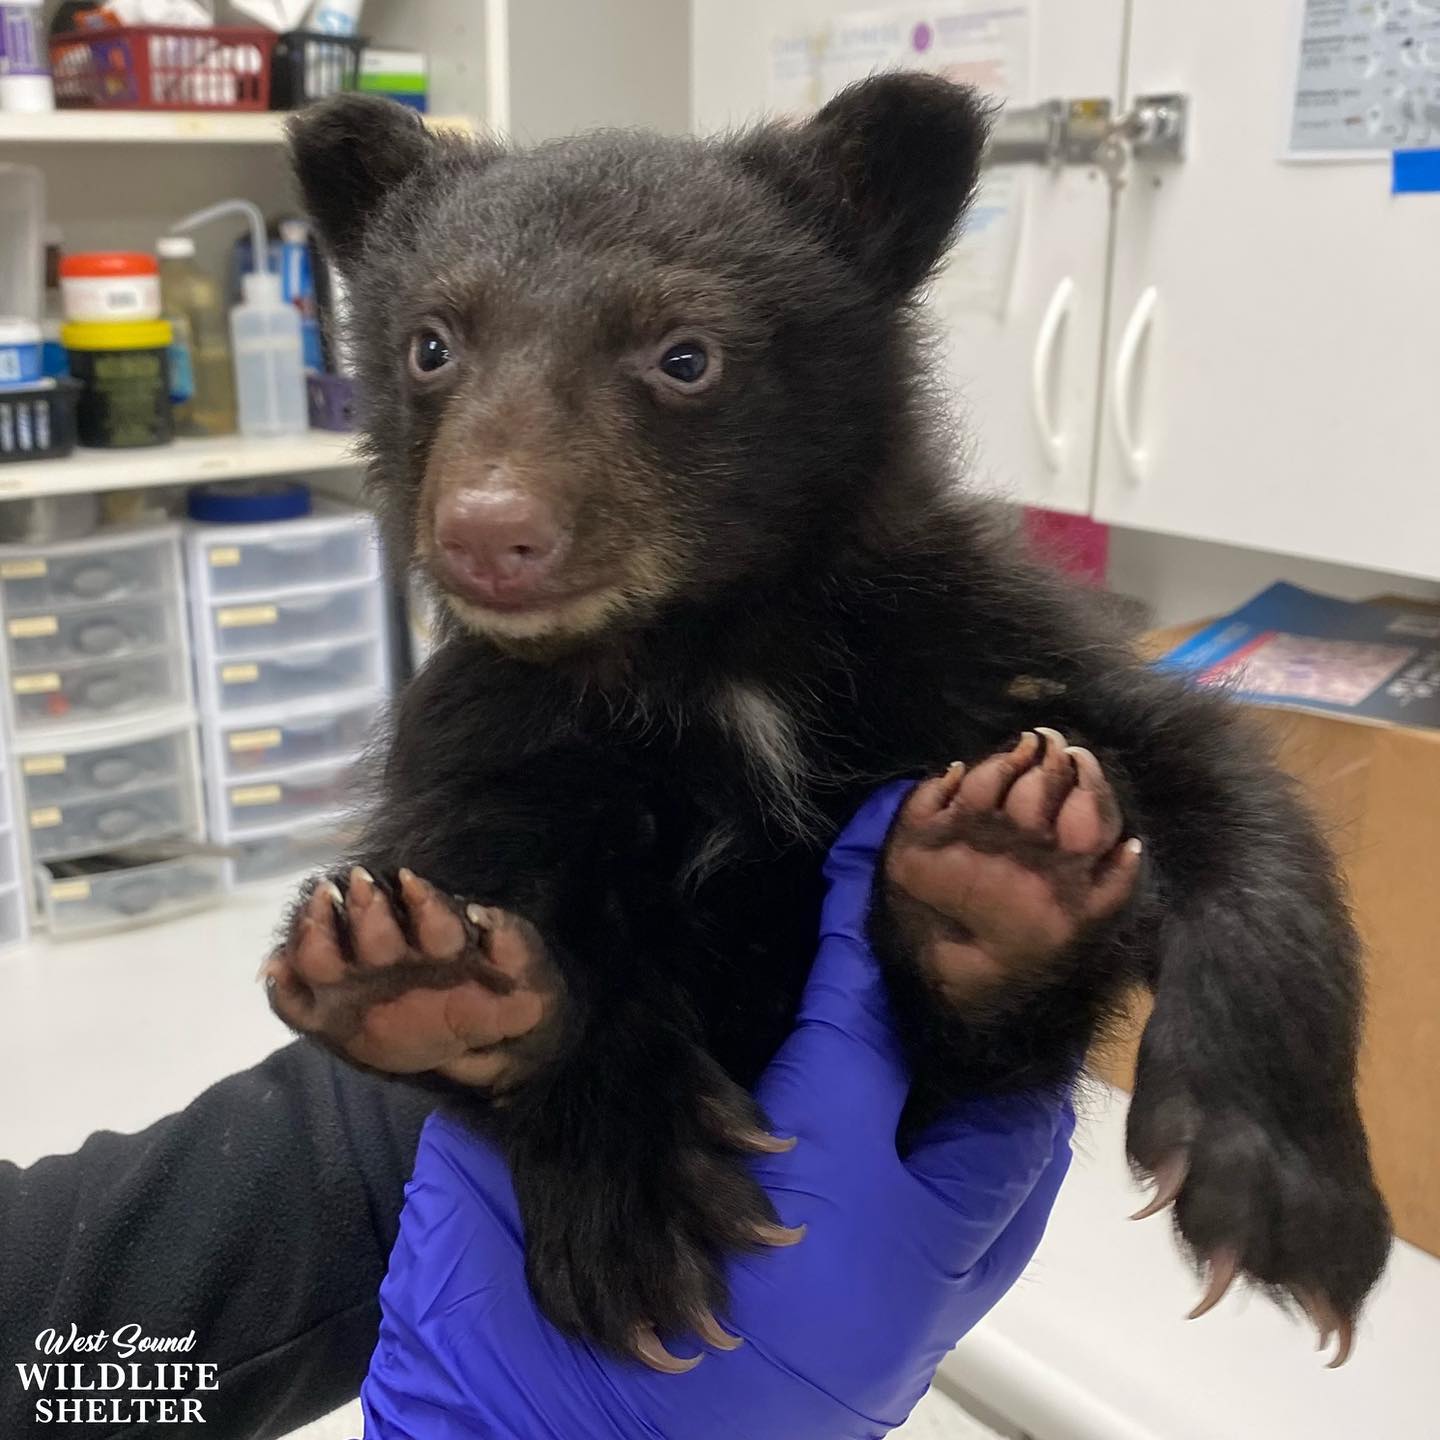 cute little bear in hands